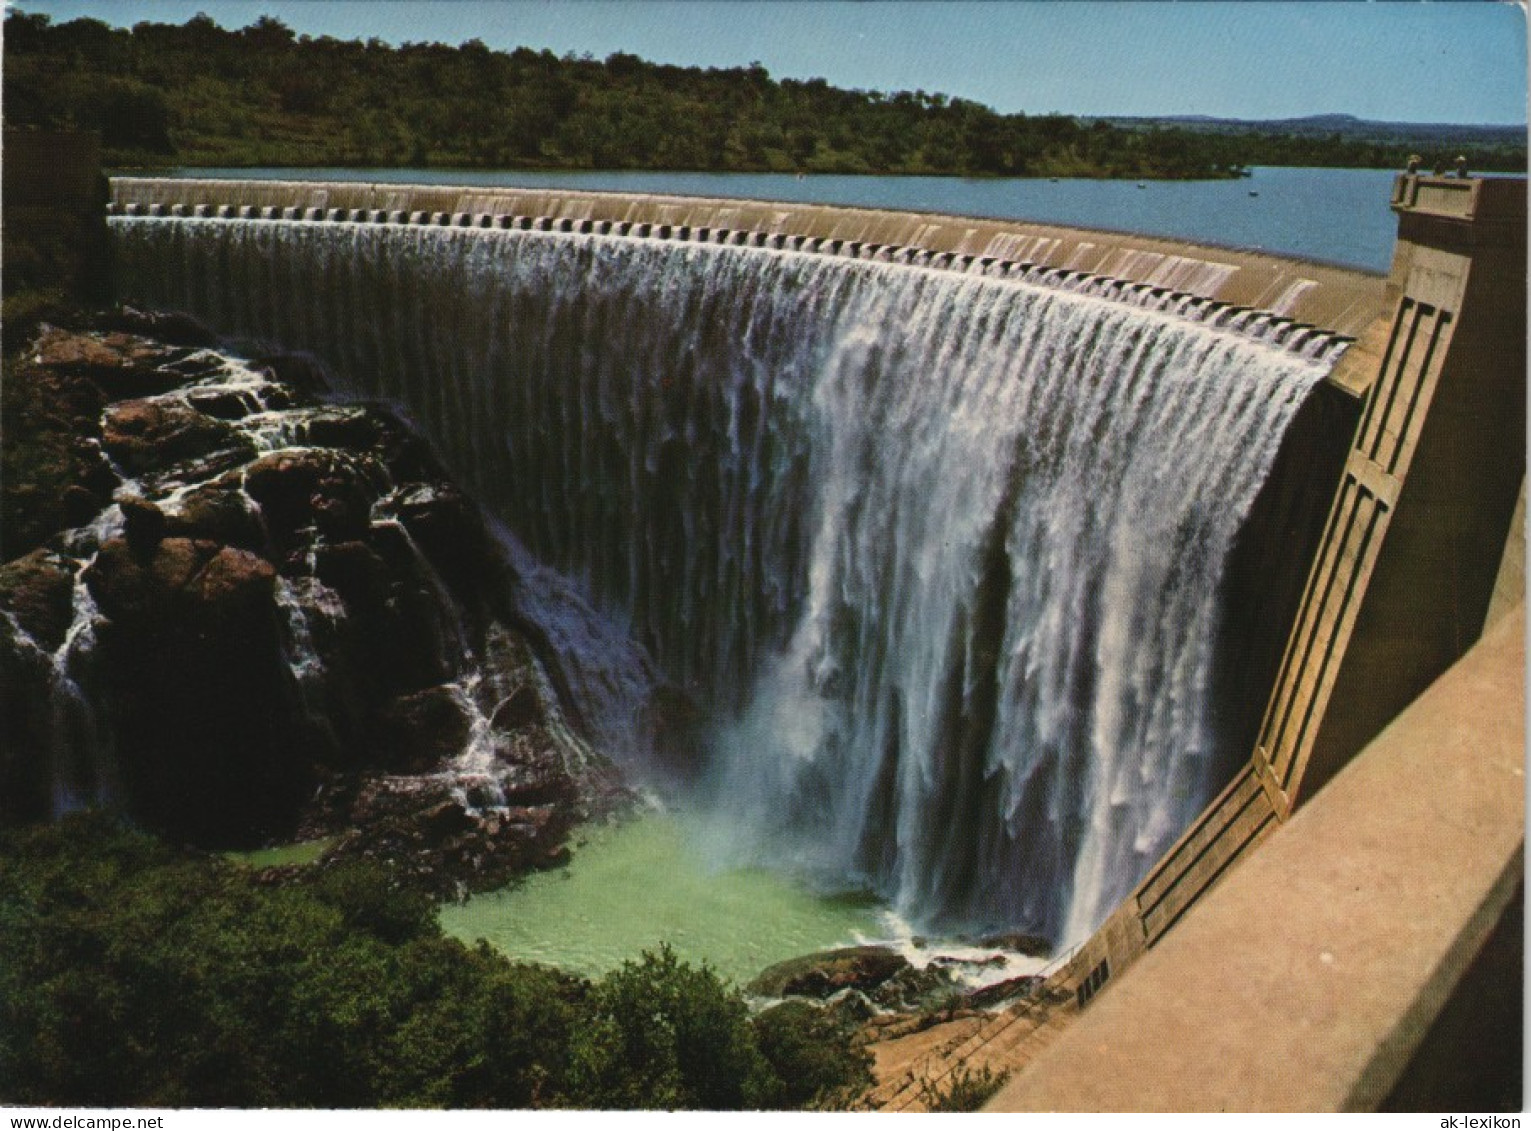 Südafrika Roodeplaat Dam In The Pienaar's River, Staudamm Südafrika 1975 - South Africa